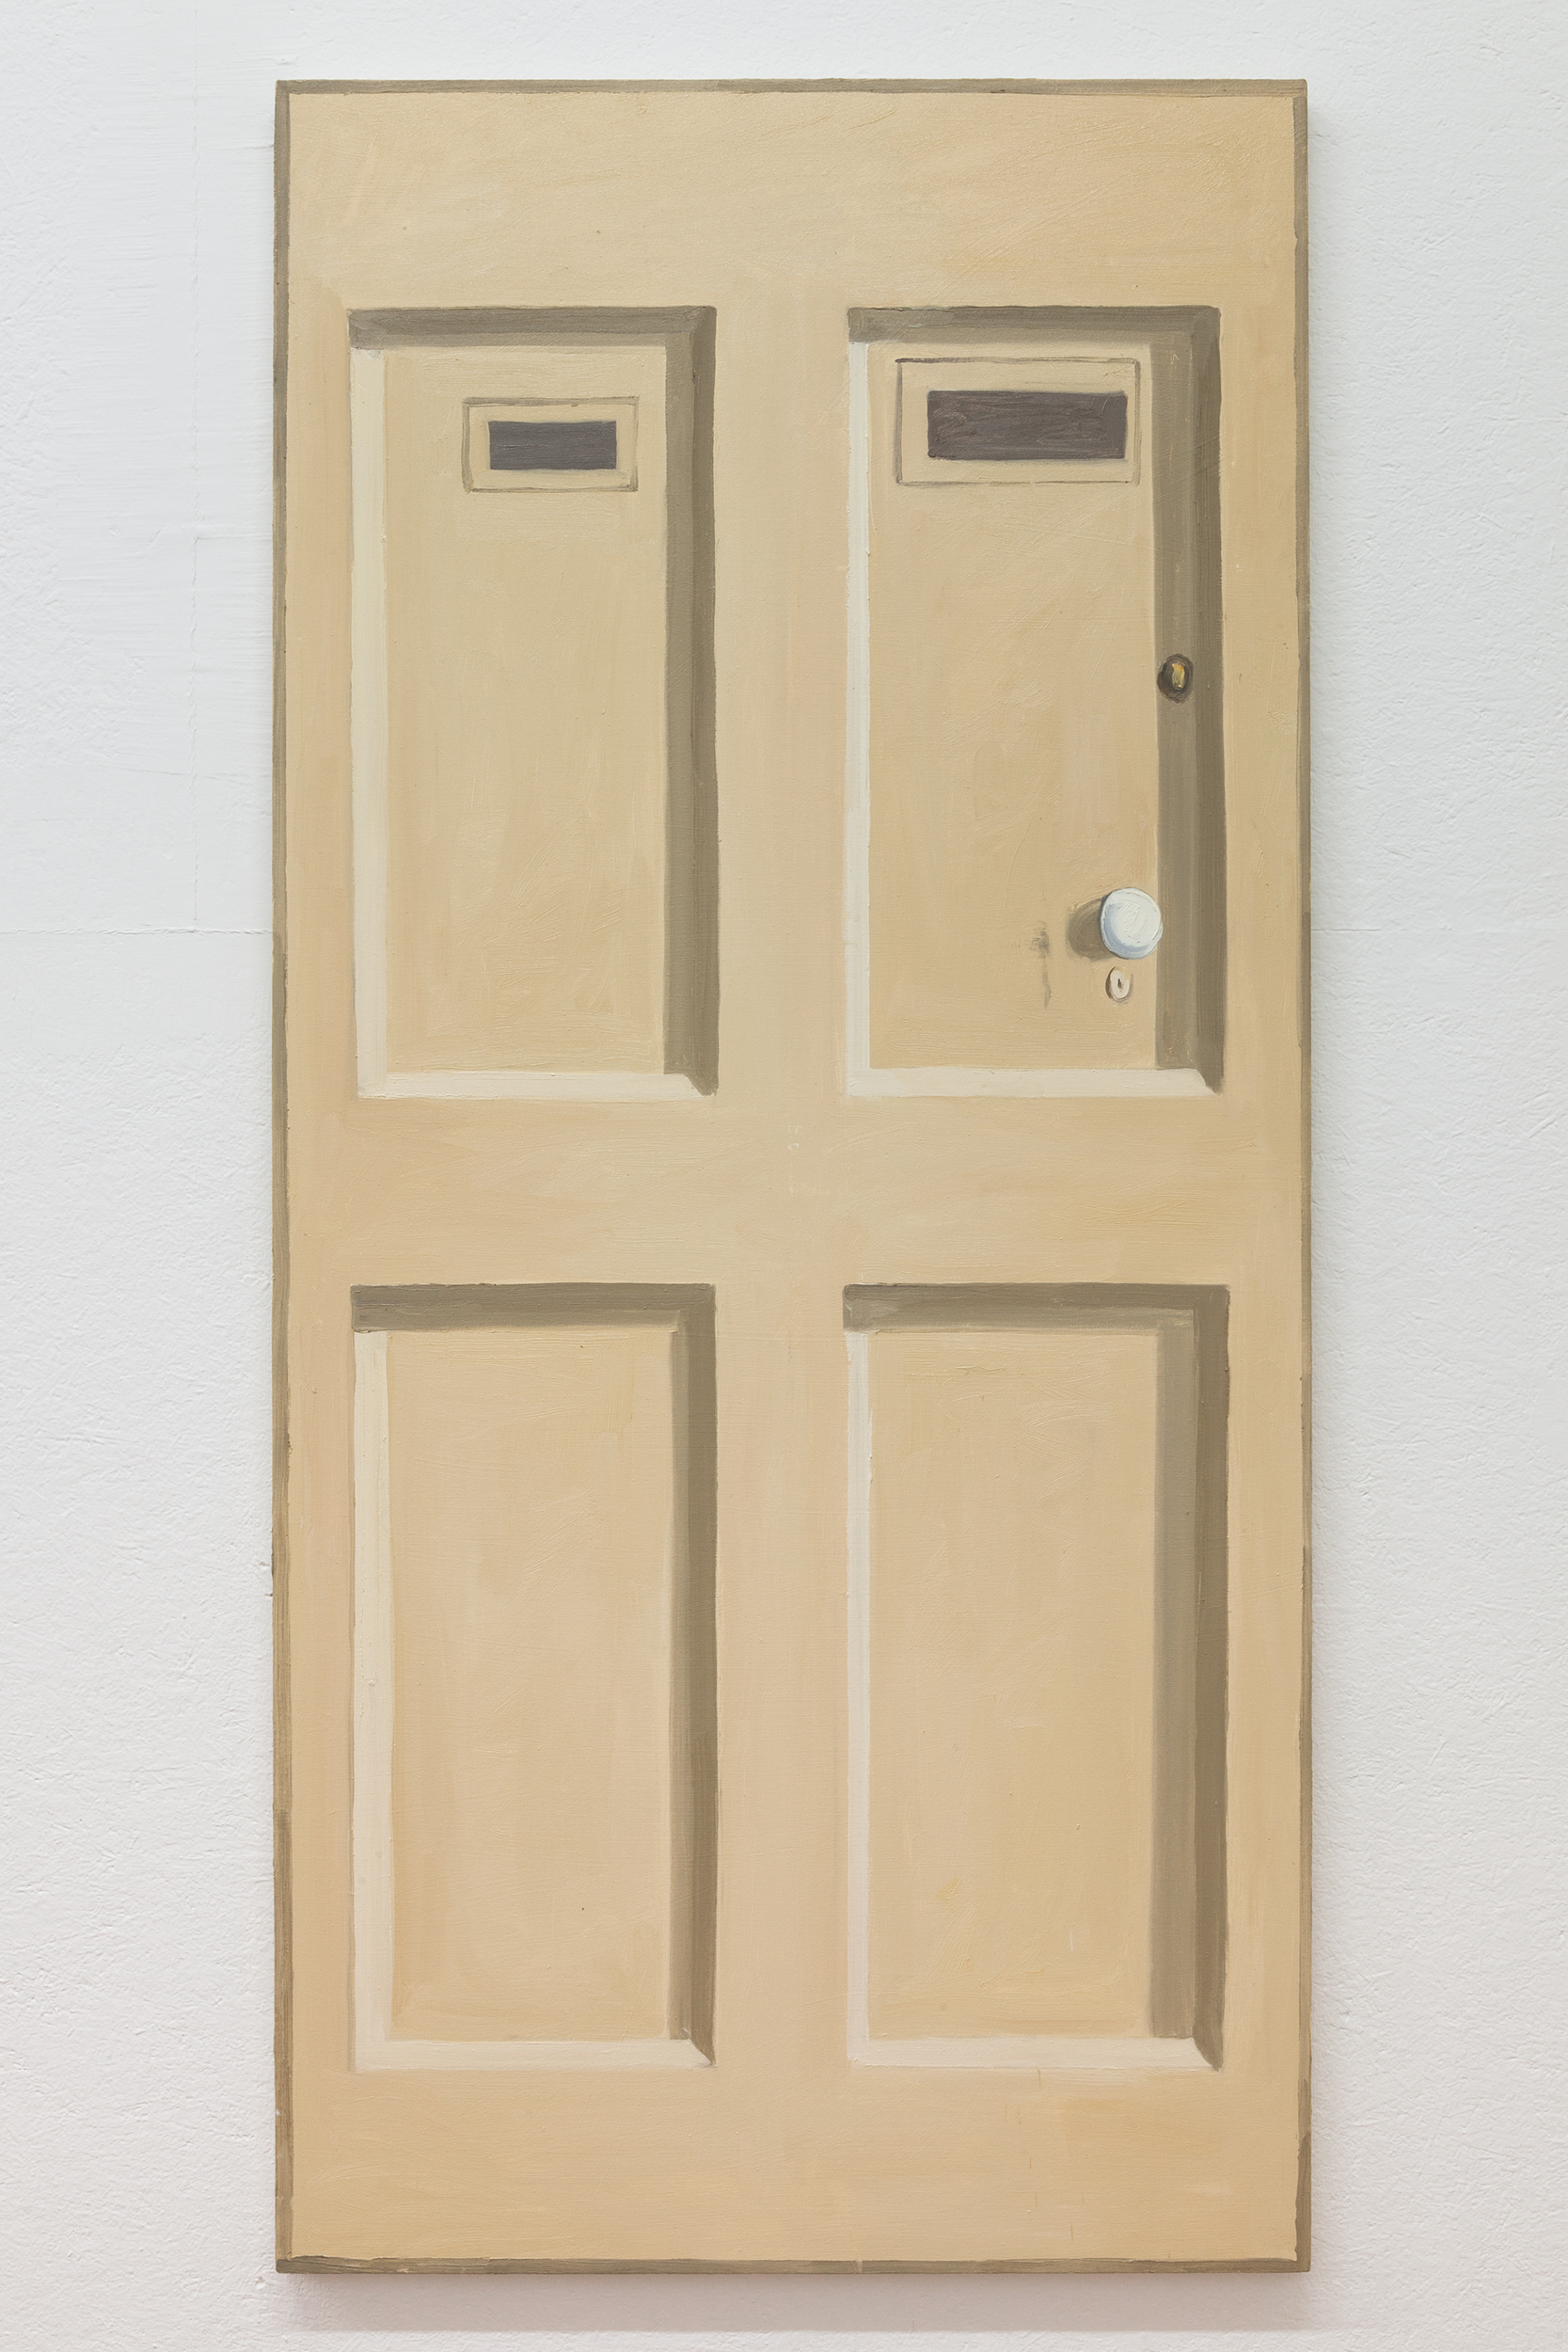  Richard Bosman,  Giorgio Morandi Door , 2016, Oil on canvas, 72 x 34 inches 